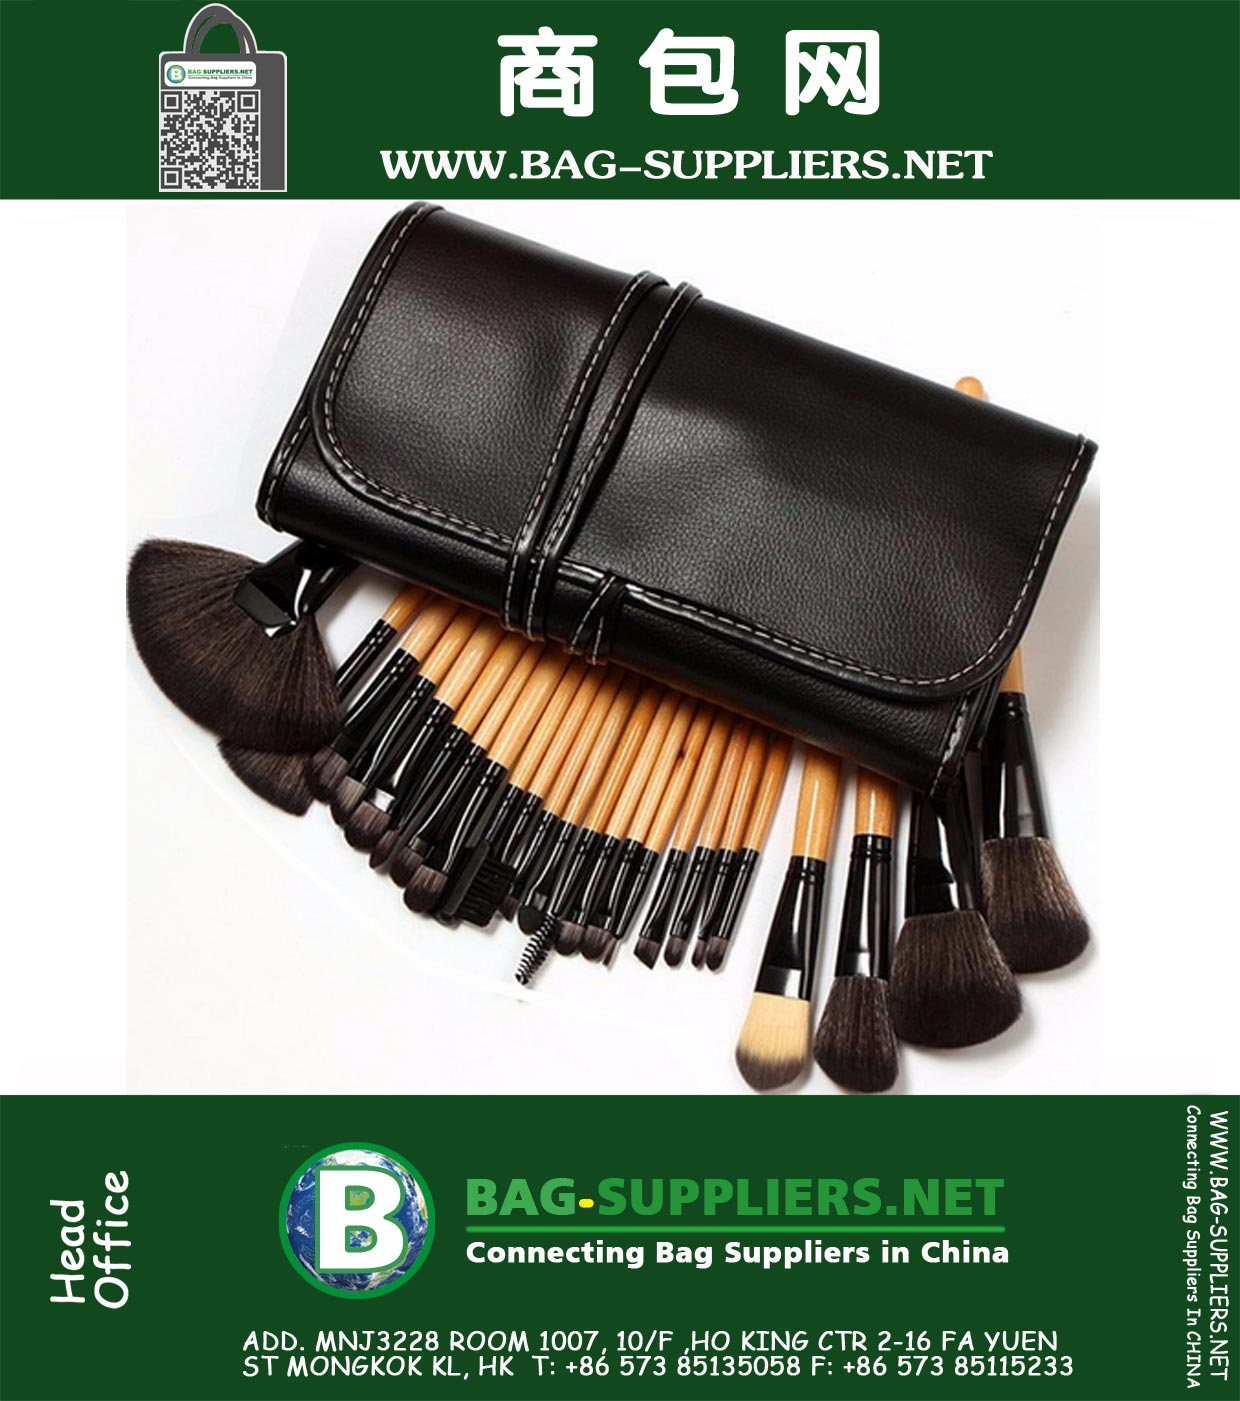 32Pcs набор Профессиональные кисти для макияжа Soft Cosmetic Addbeauty кисти для макияжа верхнего качества Макияж Tool Kit Чехол сумка